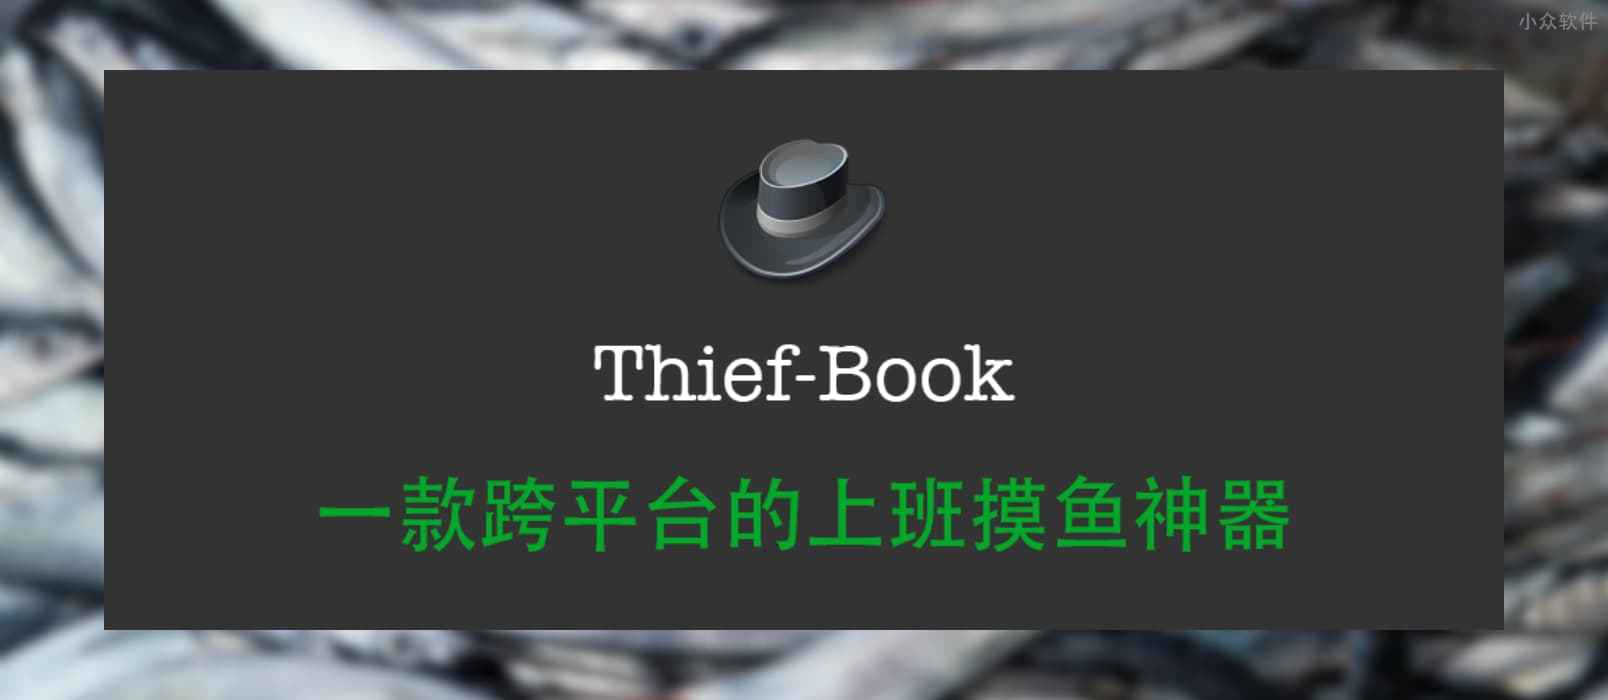 最强上班摸鱼工具 Thief-Book 3.0 发布，新增股票价格监控、 Mac 下 Touch Bar 模式